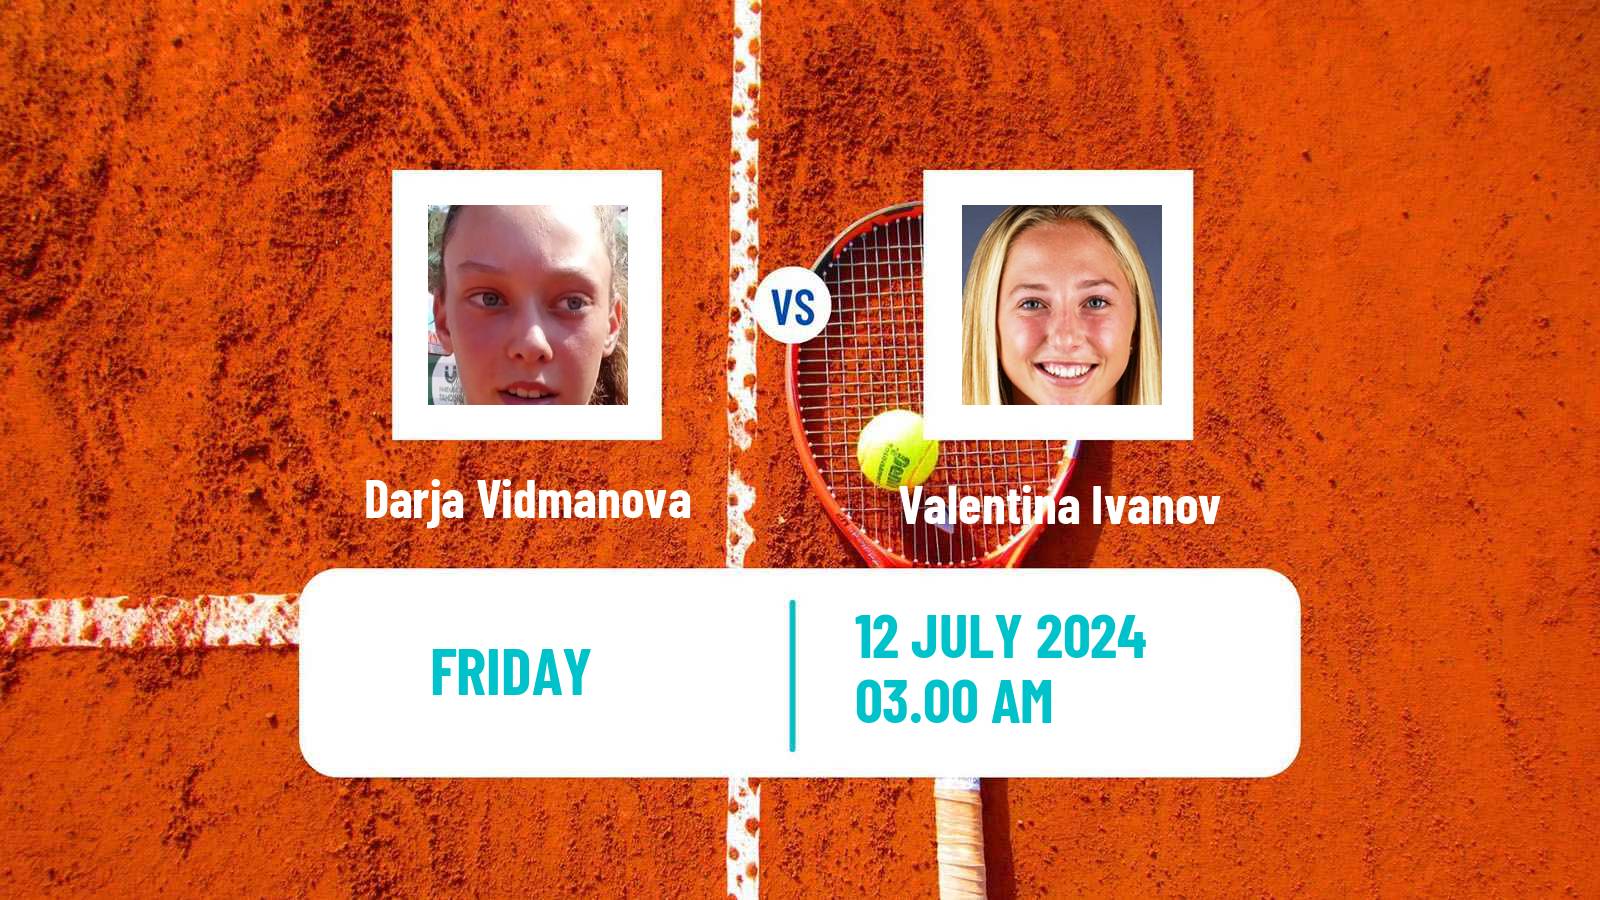 Tennis ITF W15 Kursumlijska Banja 11 Women Darja Vidmanova - Valentina Ivanov